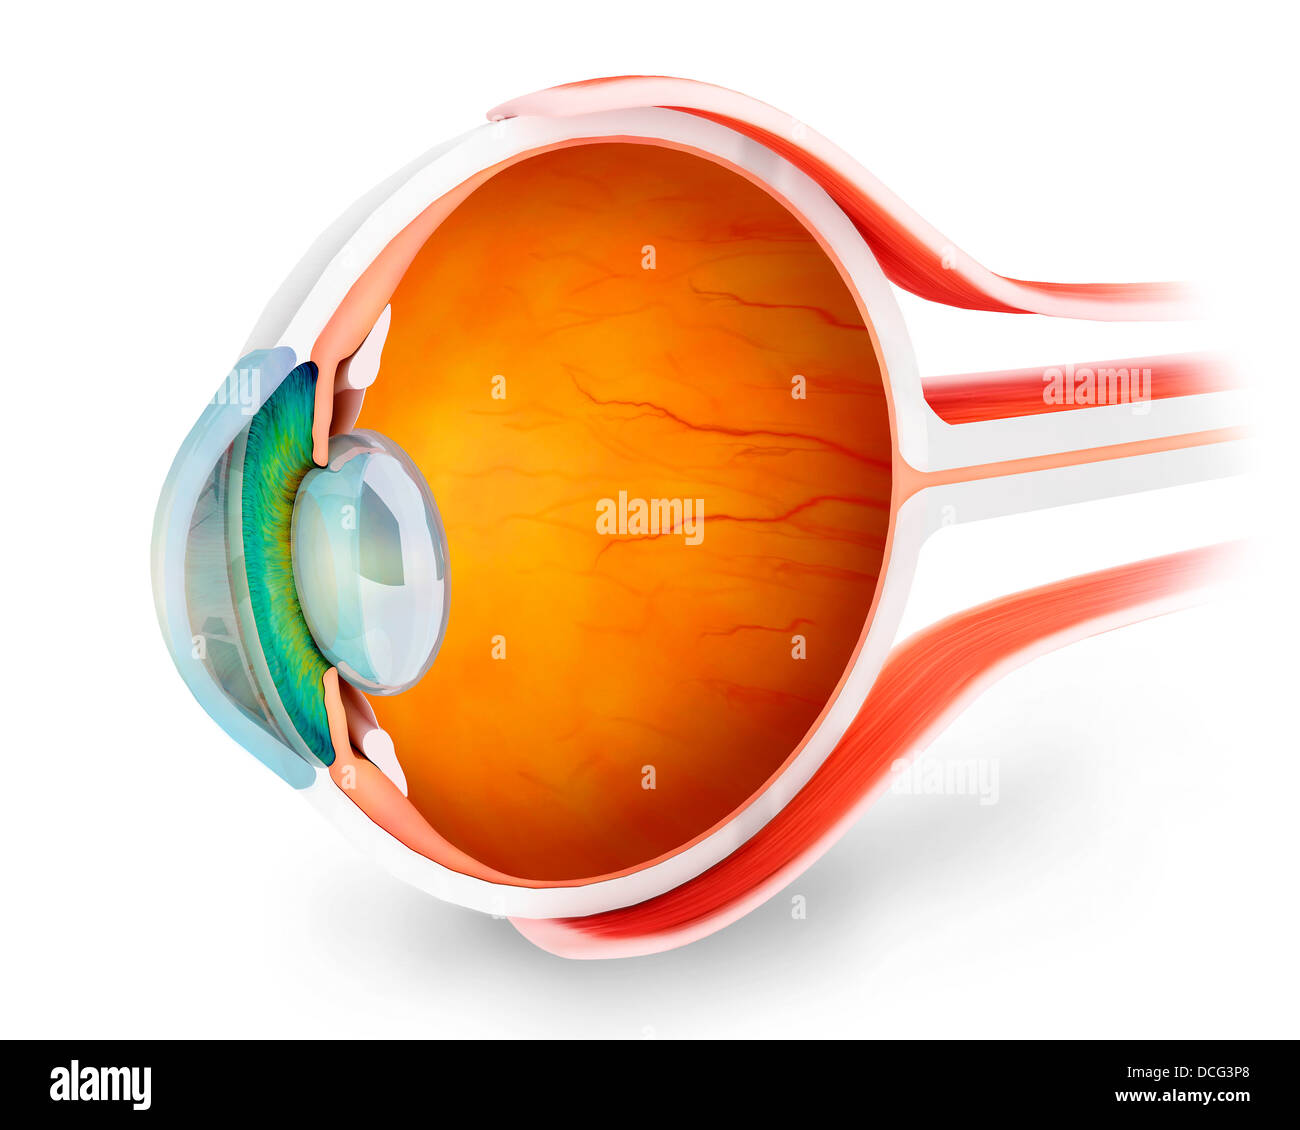 Anatomy of human eye, perspective. Stock Photo